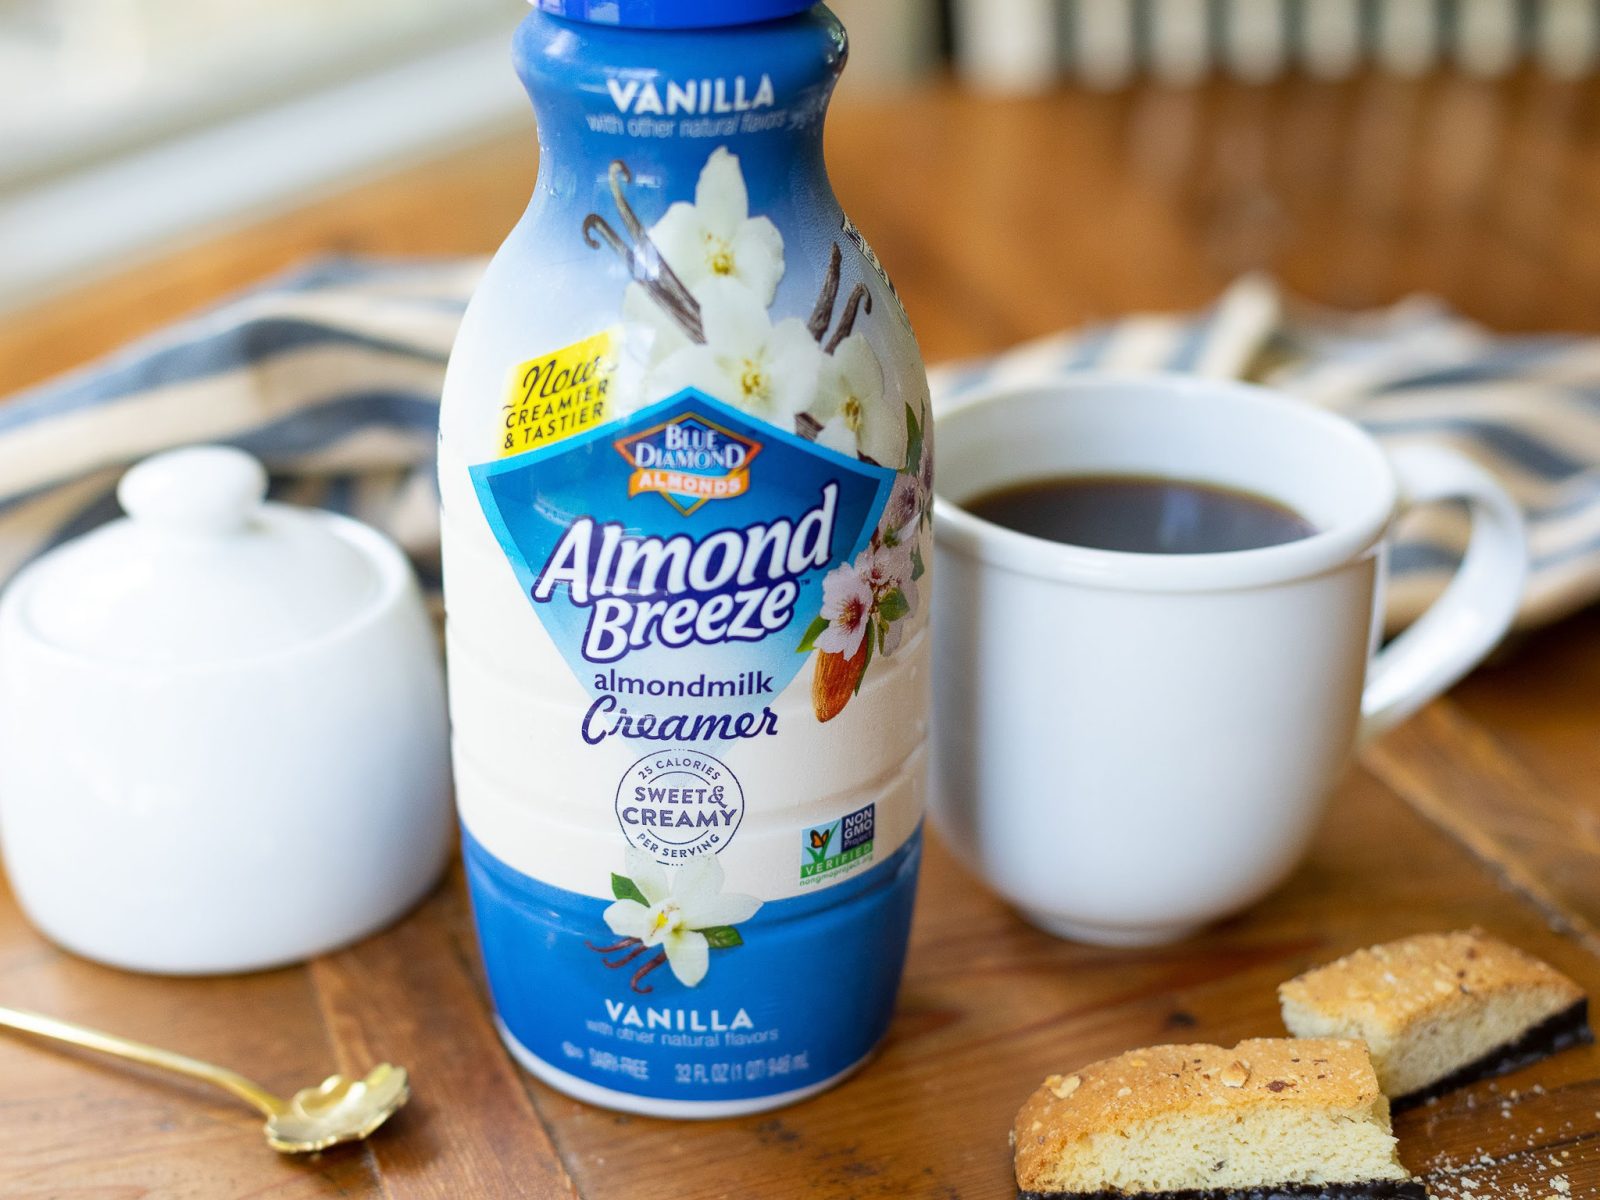 Almond Breeze Almondmilk Creamer As Low As 99¢ At Kroger